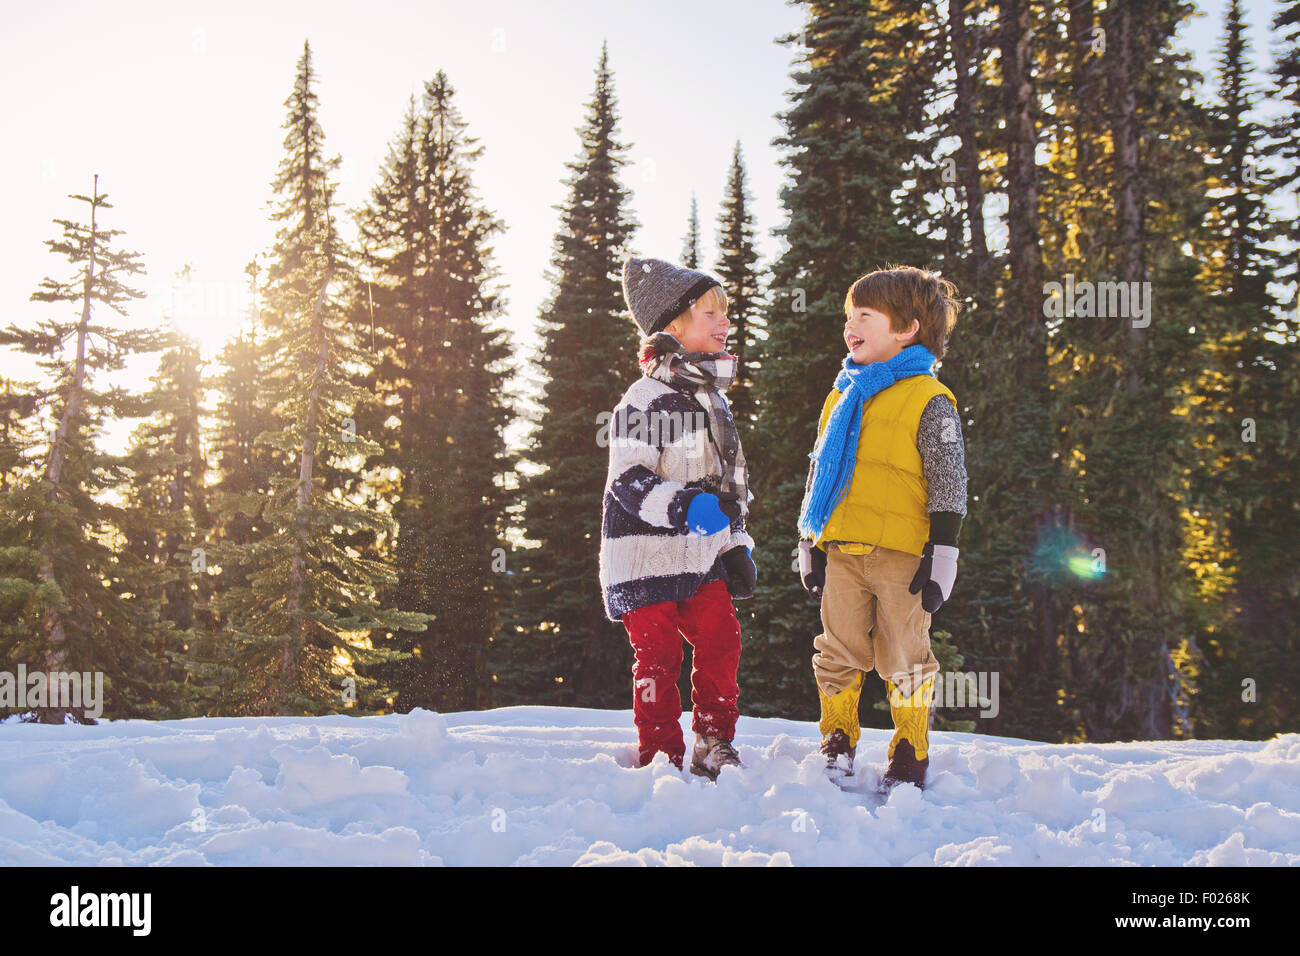 Zwei jungen Lachen im Schnee, Bäume im Hintergrund Stockfoto